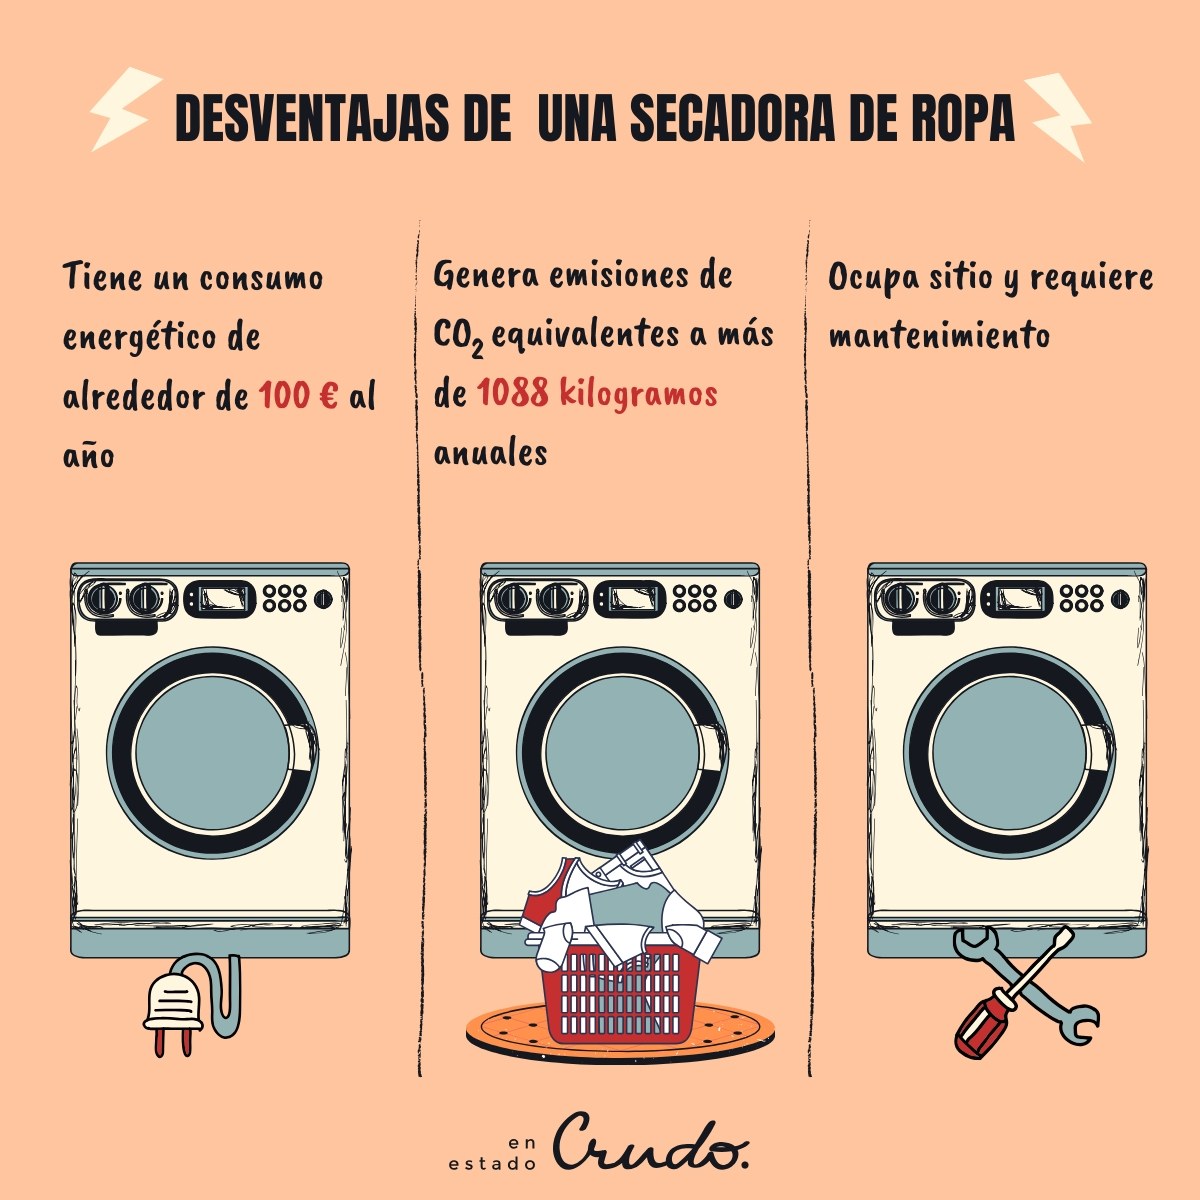 Microbio Tesauro Perla Es mejor usar secadora o tendederos tradicionales para secar la ropa?